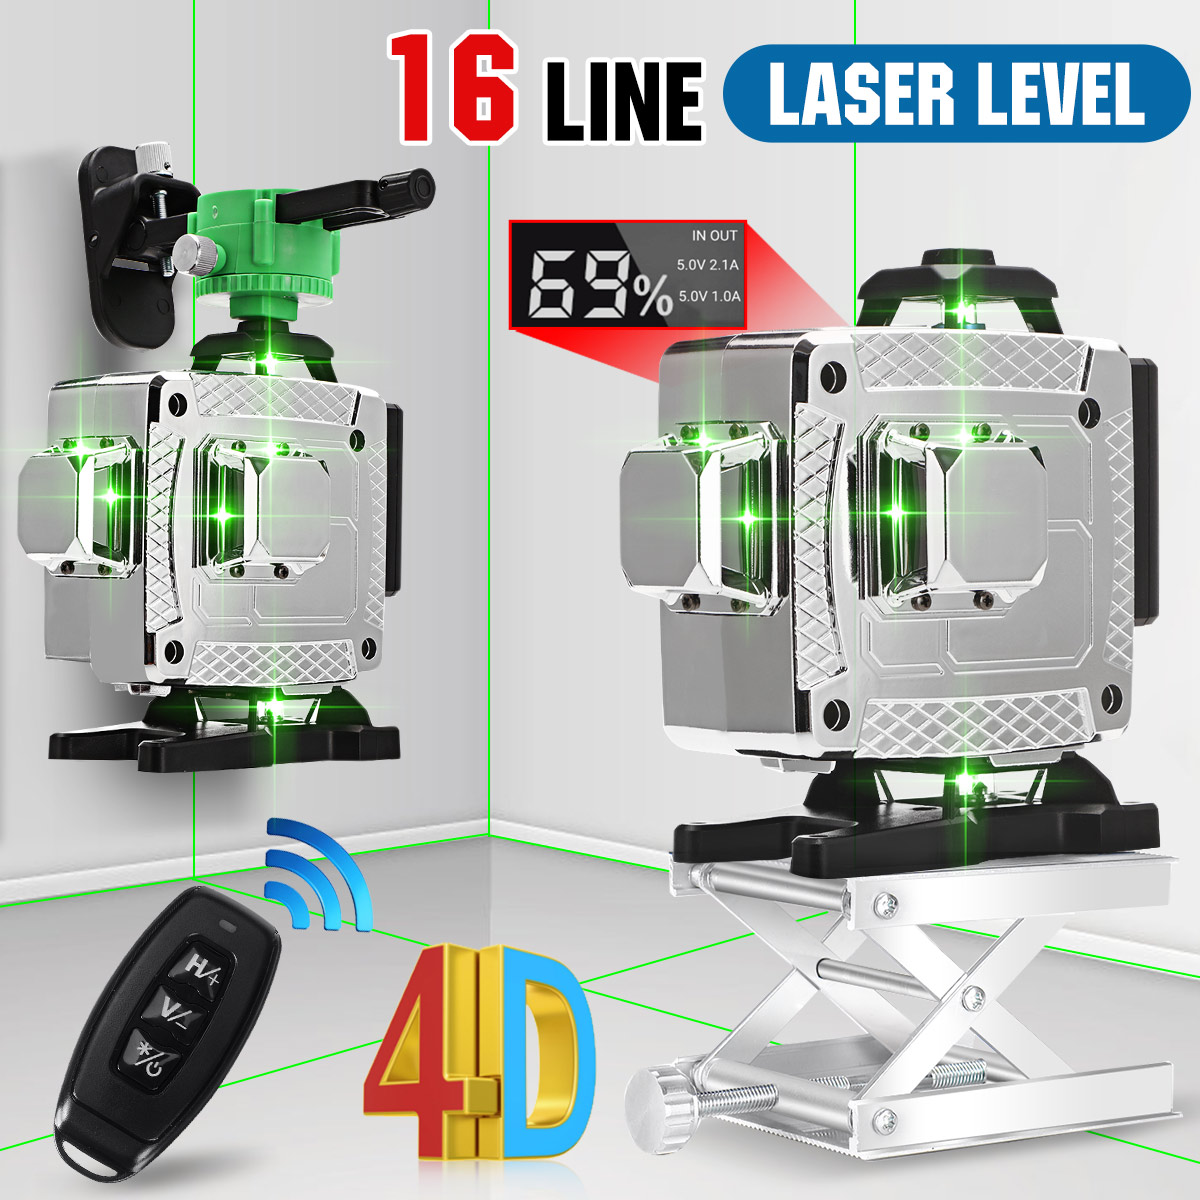 1216-Lines-4D-Green-Light-Laser-Level-Auto-Self-Leveling-Cross-360deg-Rotary-Measuring-1886261-1